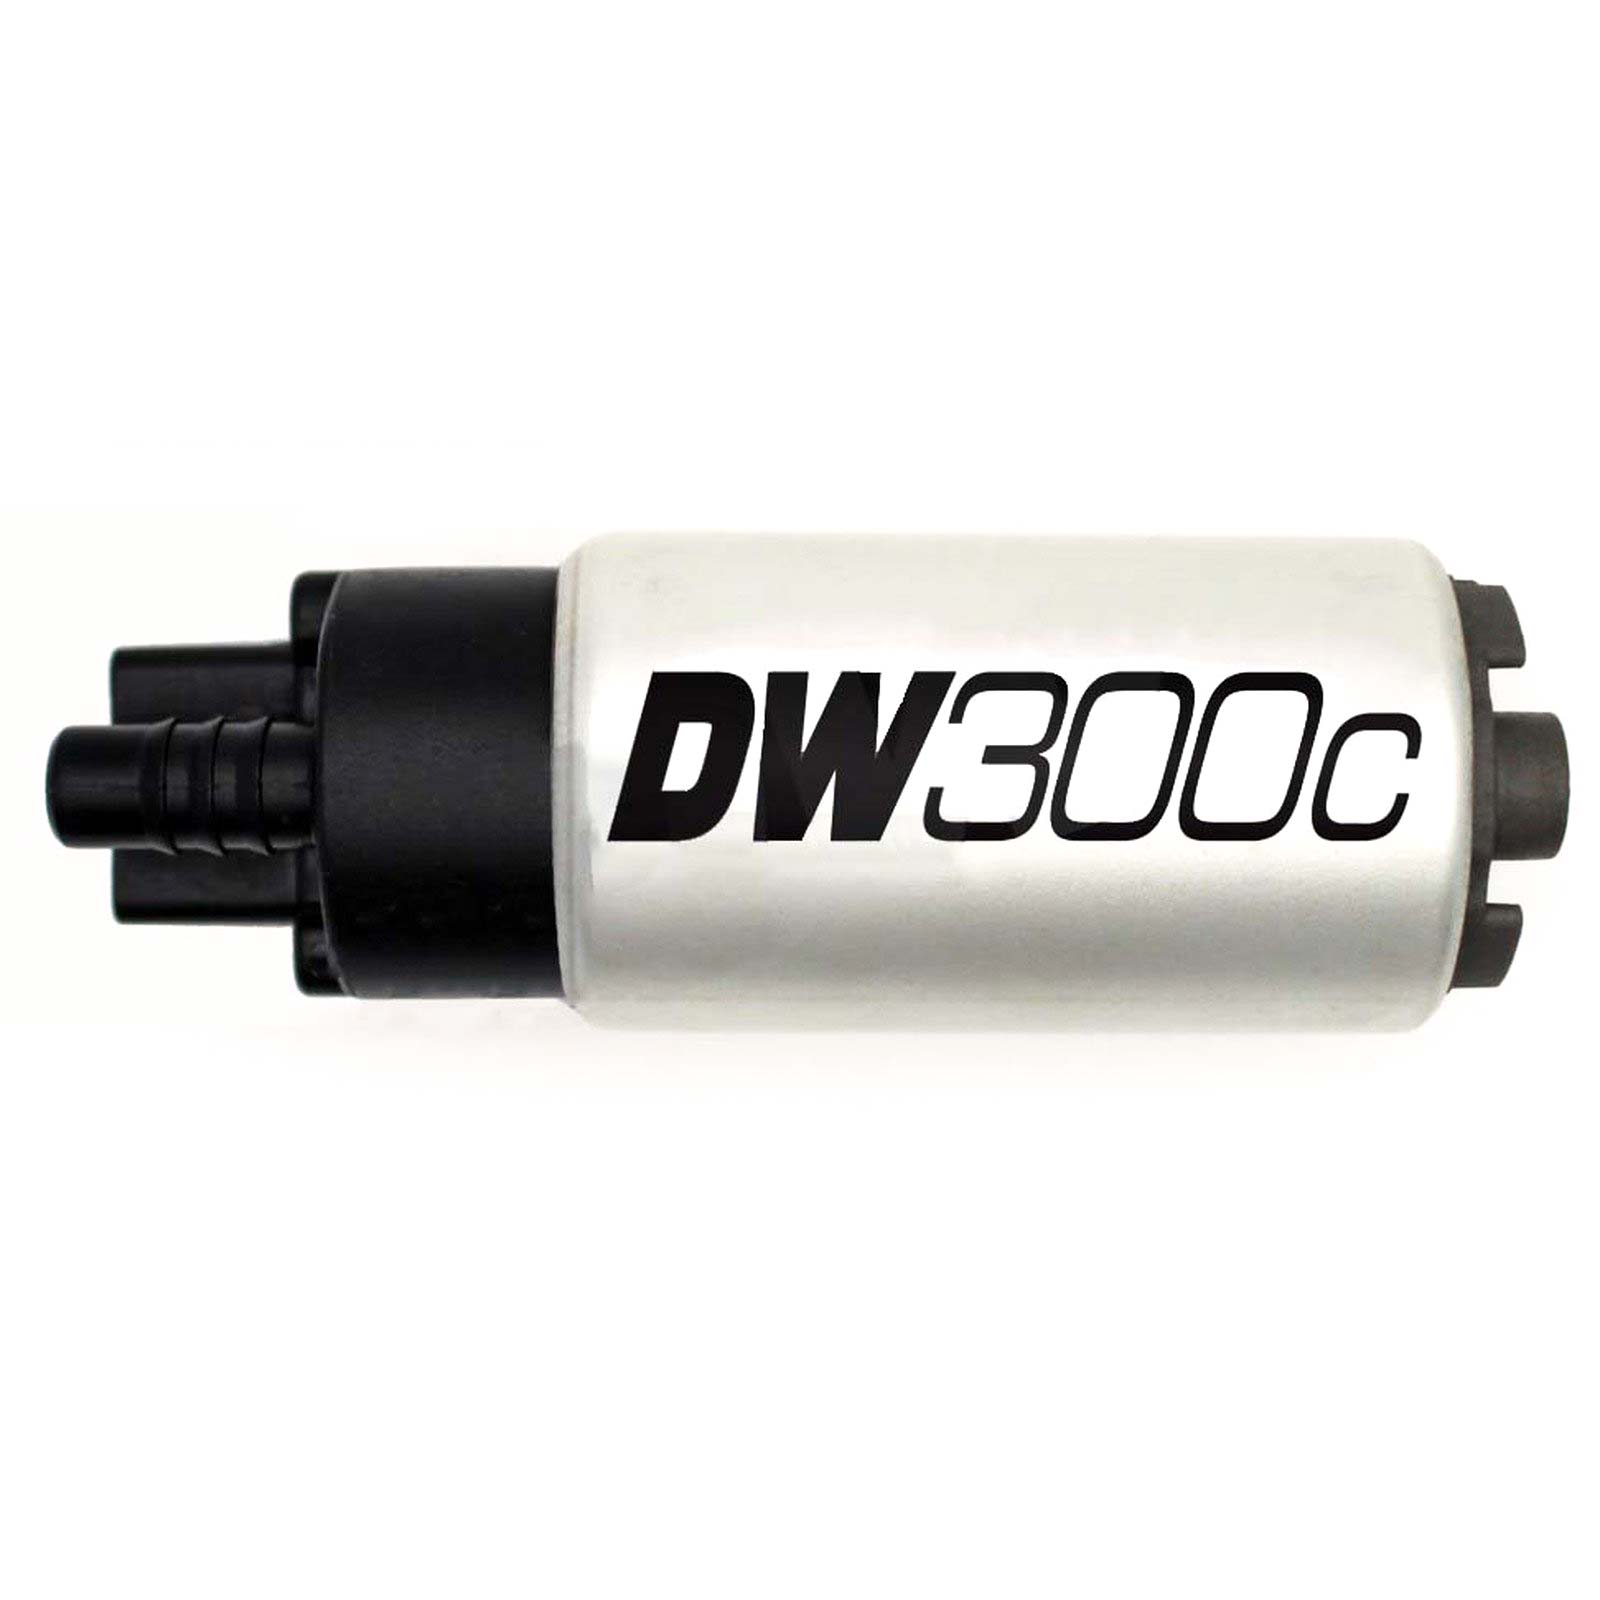 DEATSCHWERKS internal fuel pump DW300C universal 340 liters/hour - PARTS33 GmbH